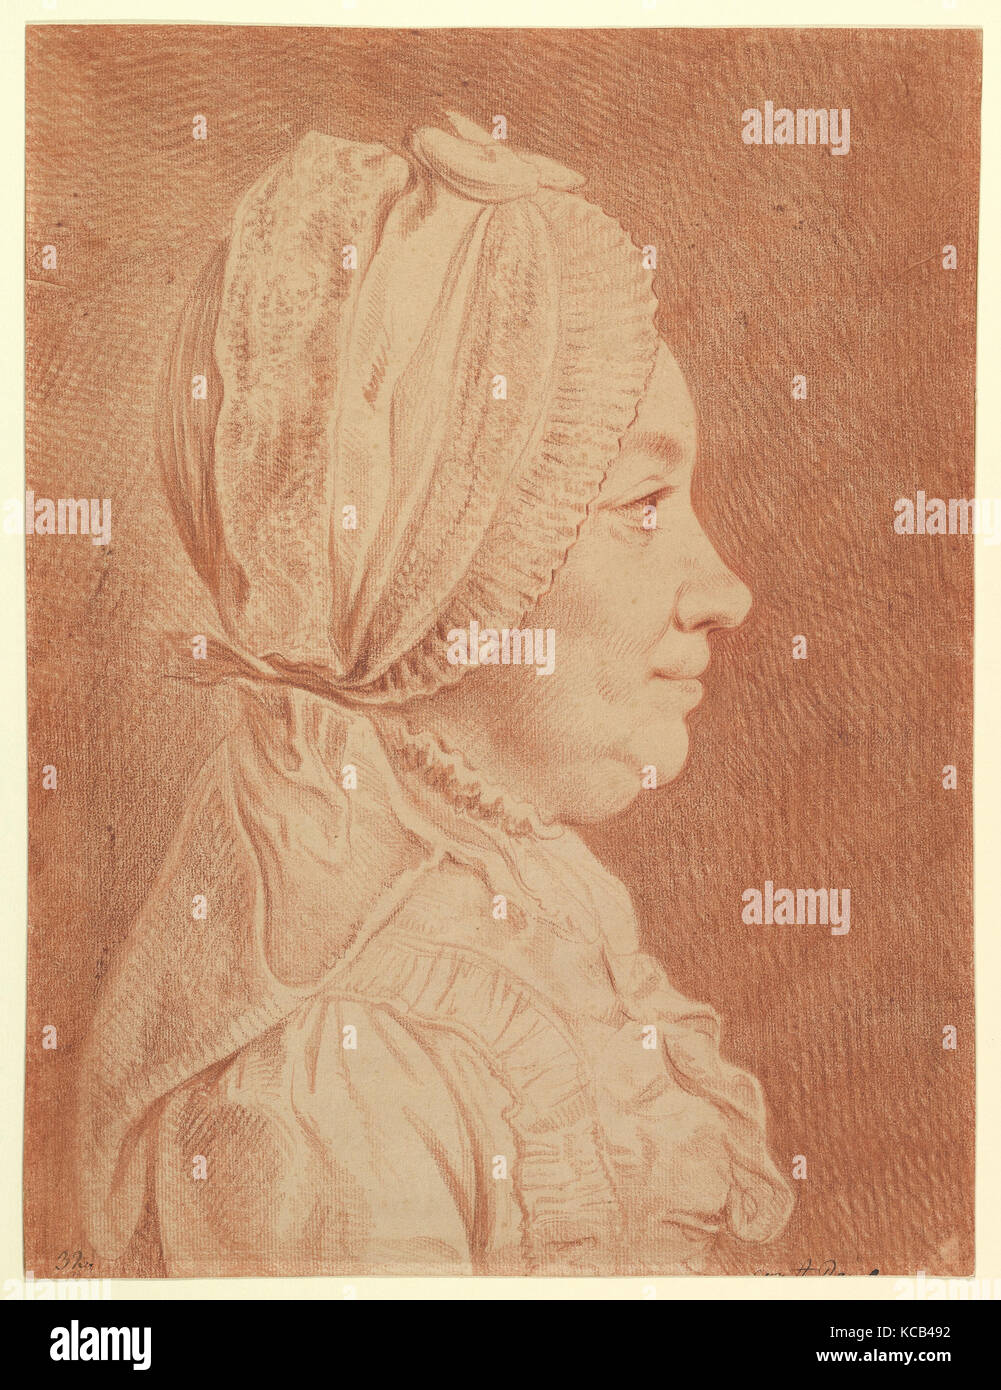 Portrait of the Artist's Wife, Daniel Nikolaus Chodowiecki, 18th century Stock Photo